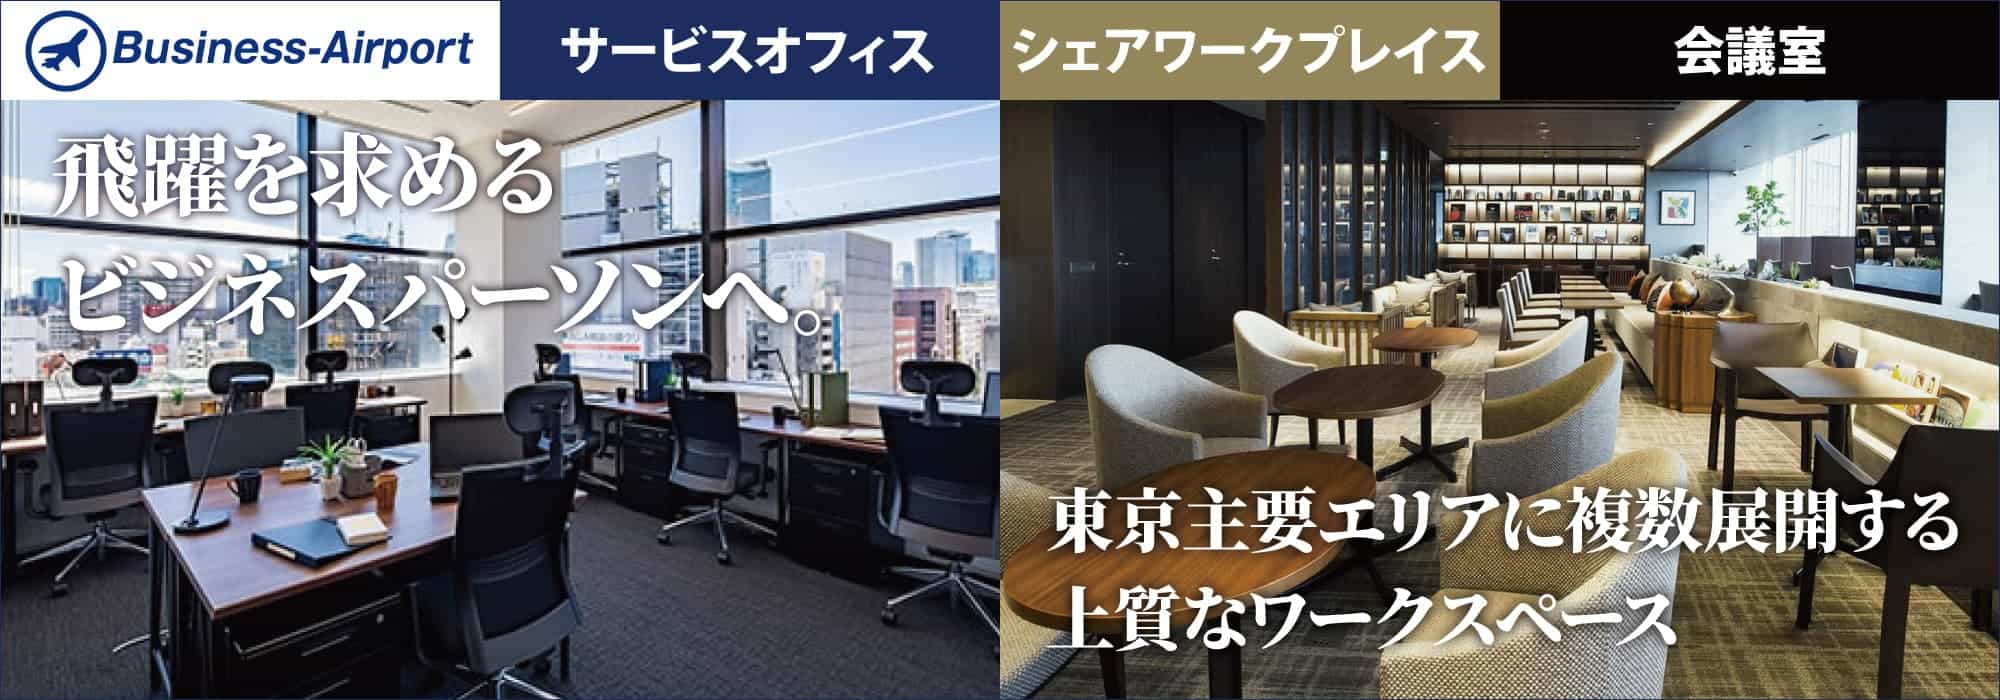 外苑前をはじめ東京主要エリアに複数展開する高品質なワークスペース。飛躍を求めるビジネスパーソンへ